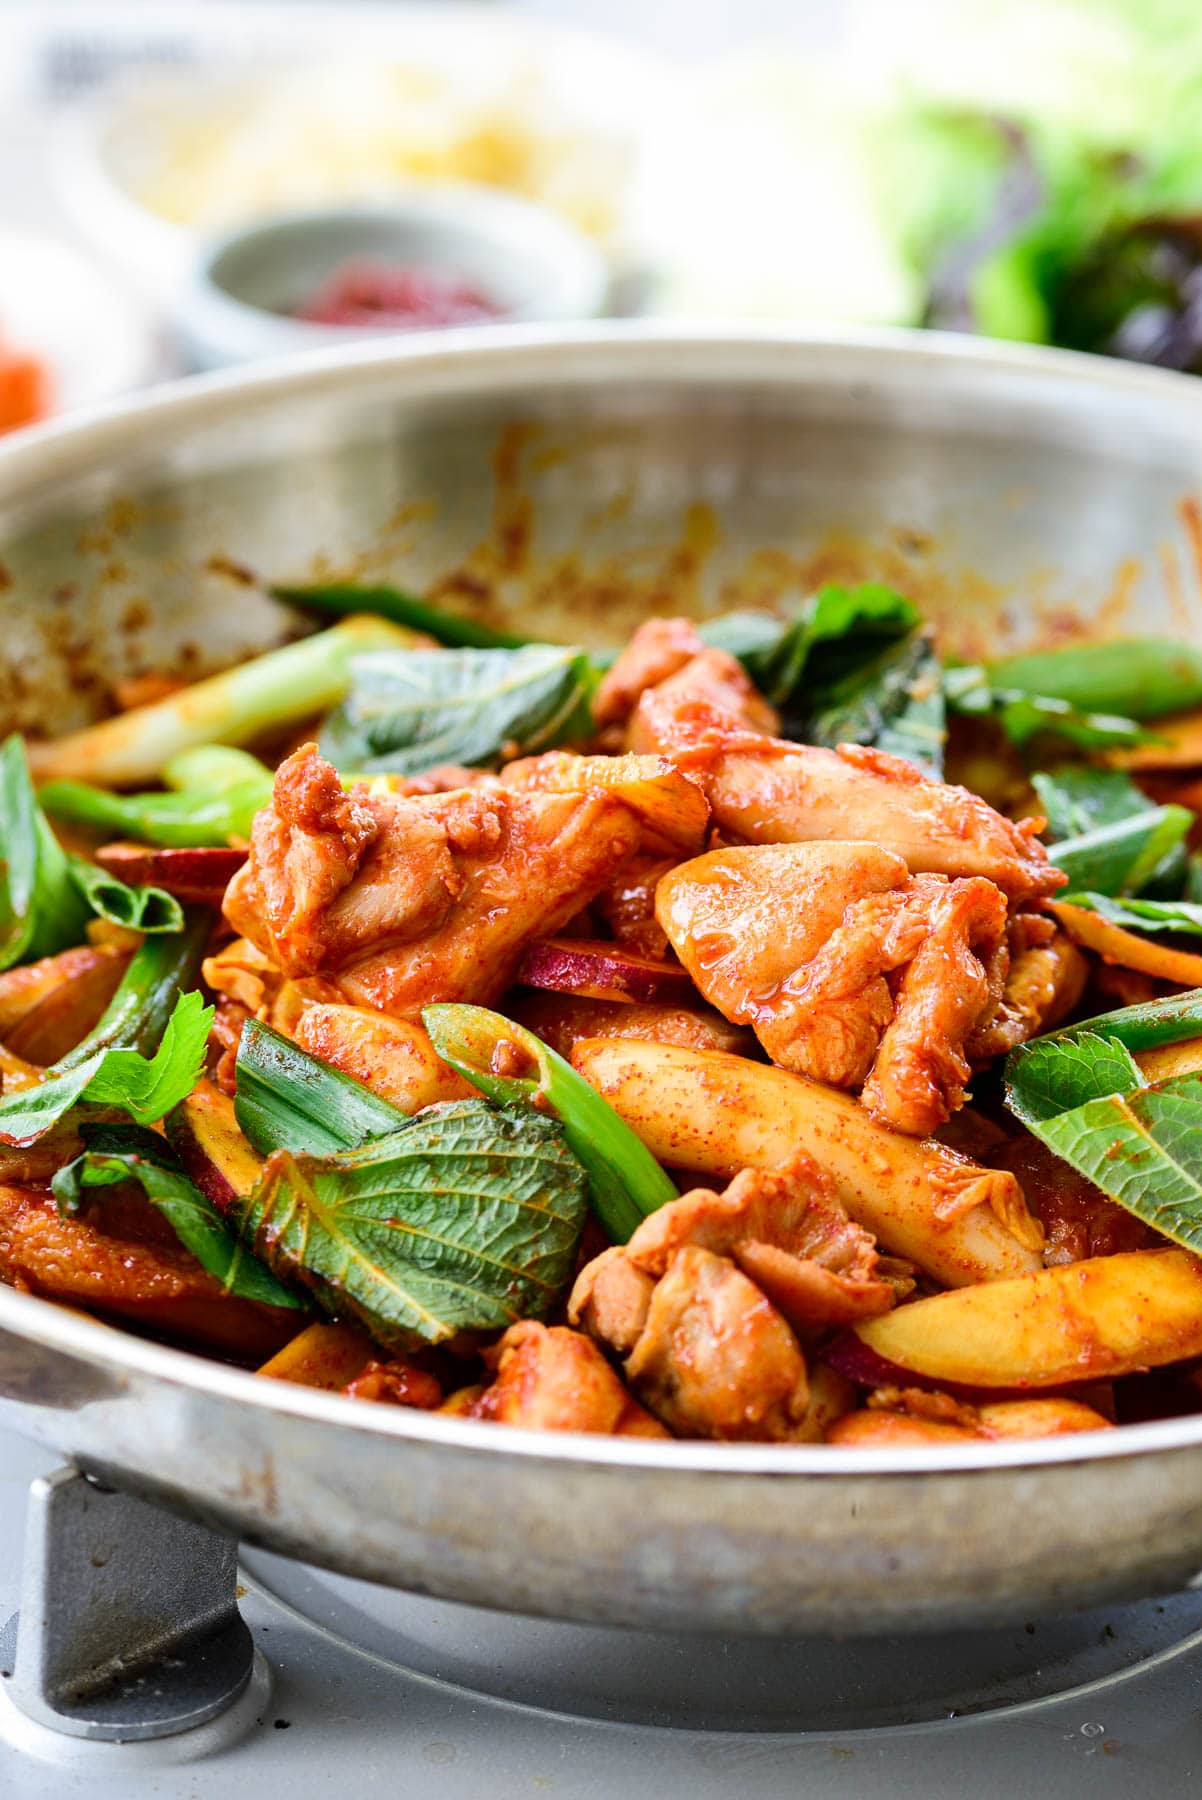 Dakgalbi (Stir-fried Spicy Chicken) - Korean Bapsang